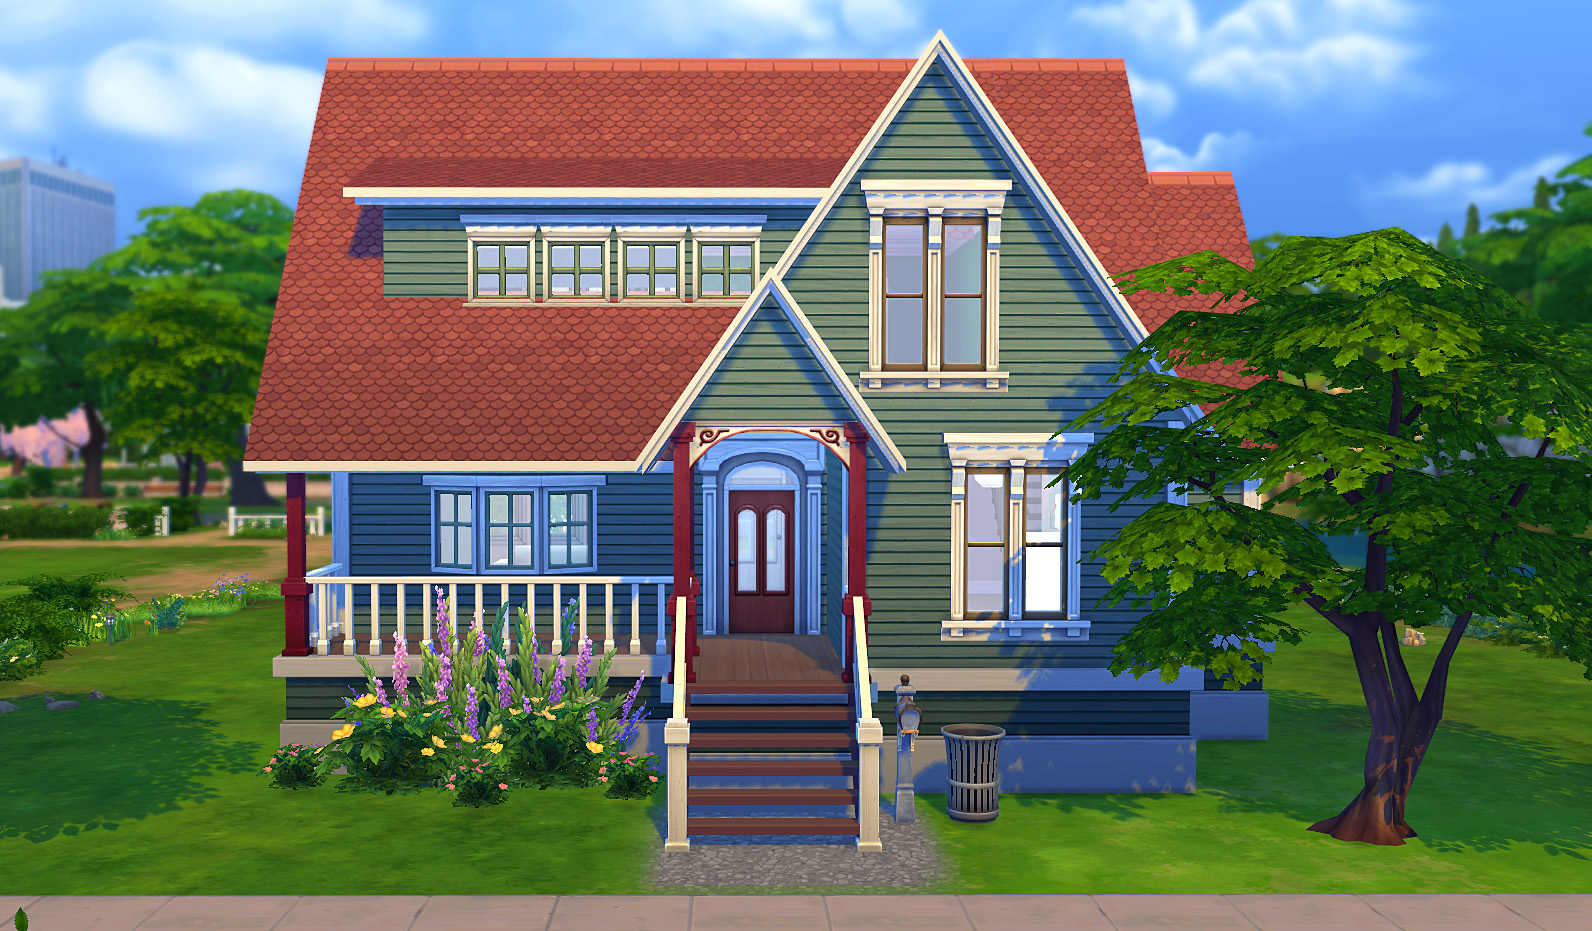 mod简介: 模拟人生4 拉森的大房子;一款西方传统风格的房屋,红瓦尖顶